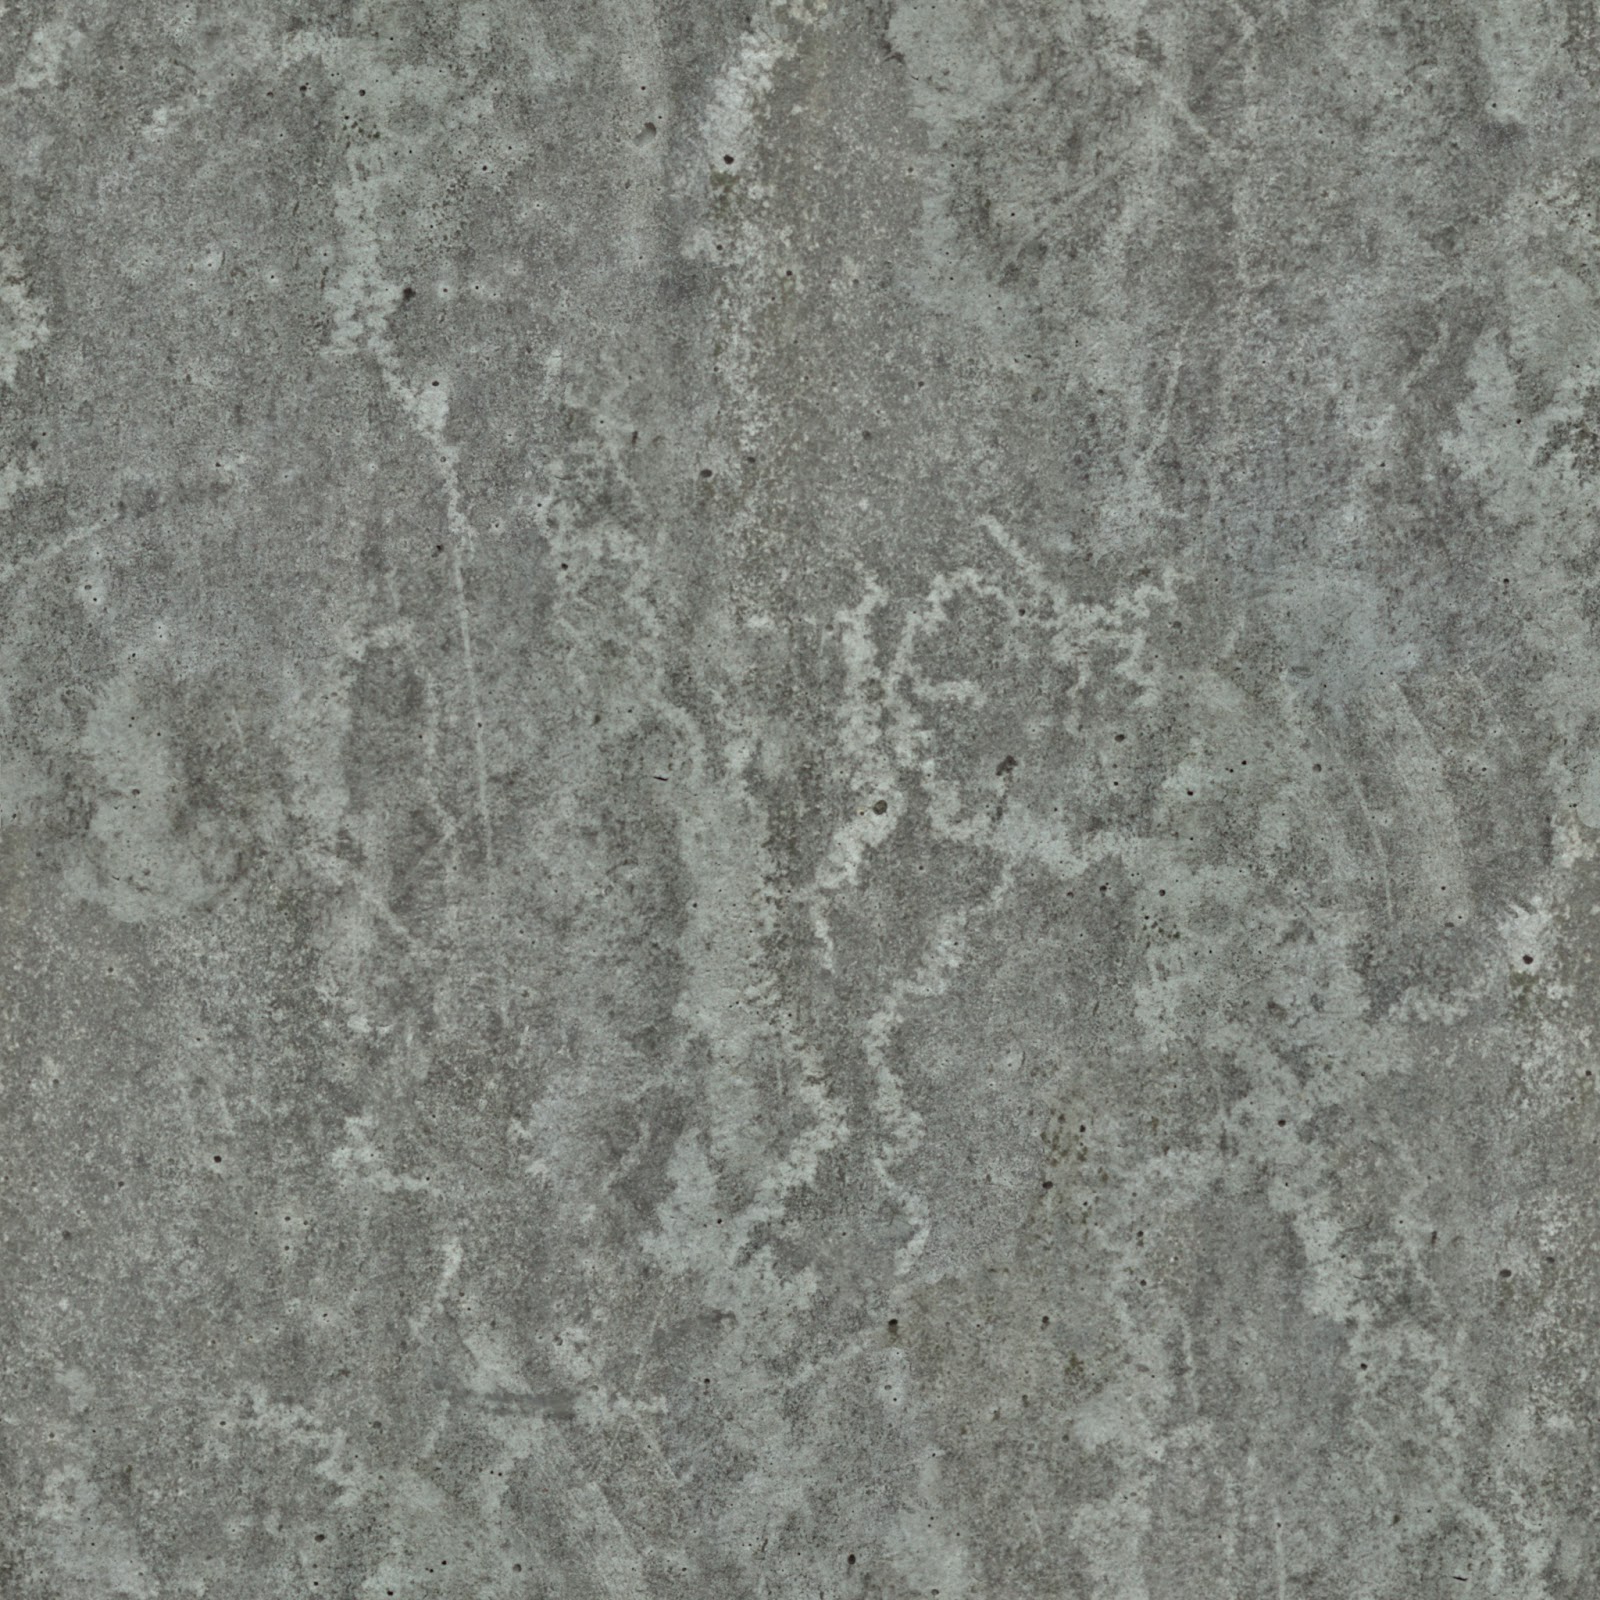 (Concrete 5) wall smooth dirt pillar seamless texture 2048x2048